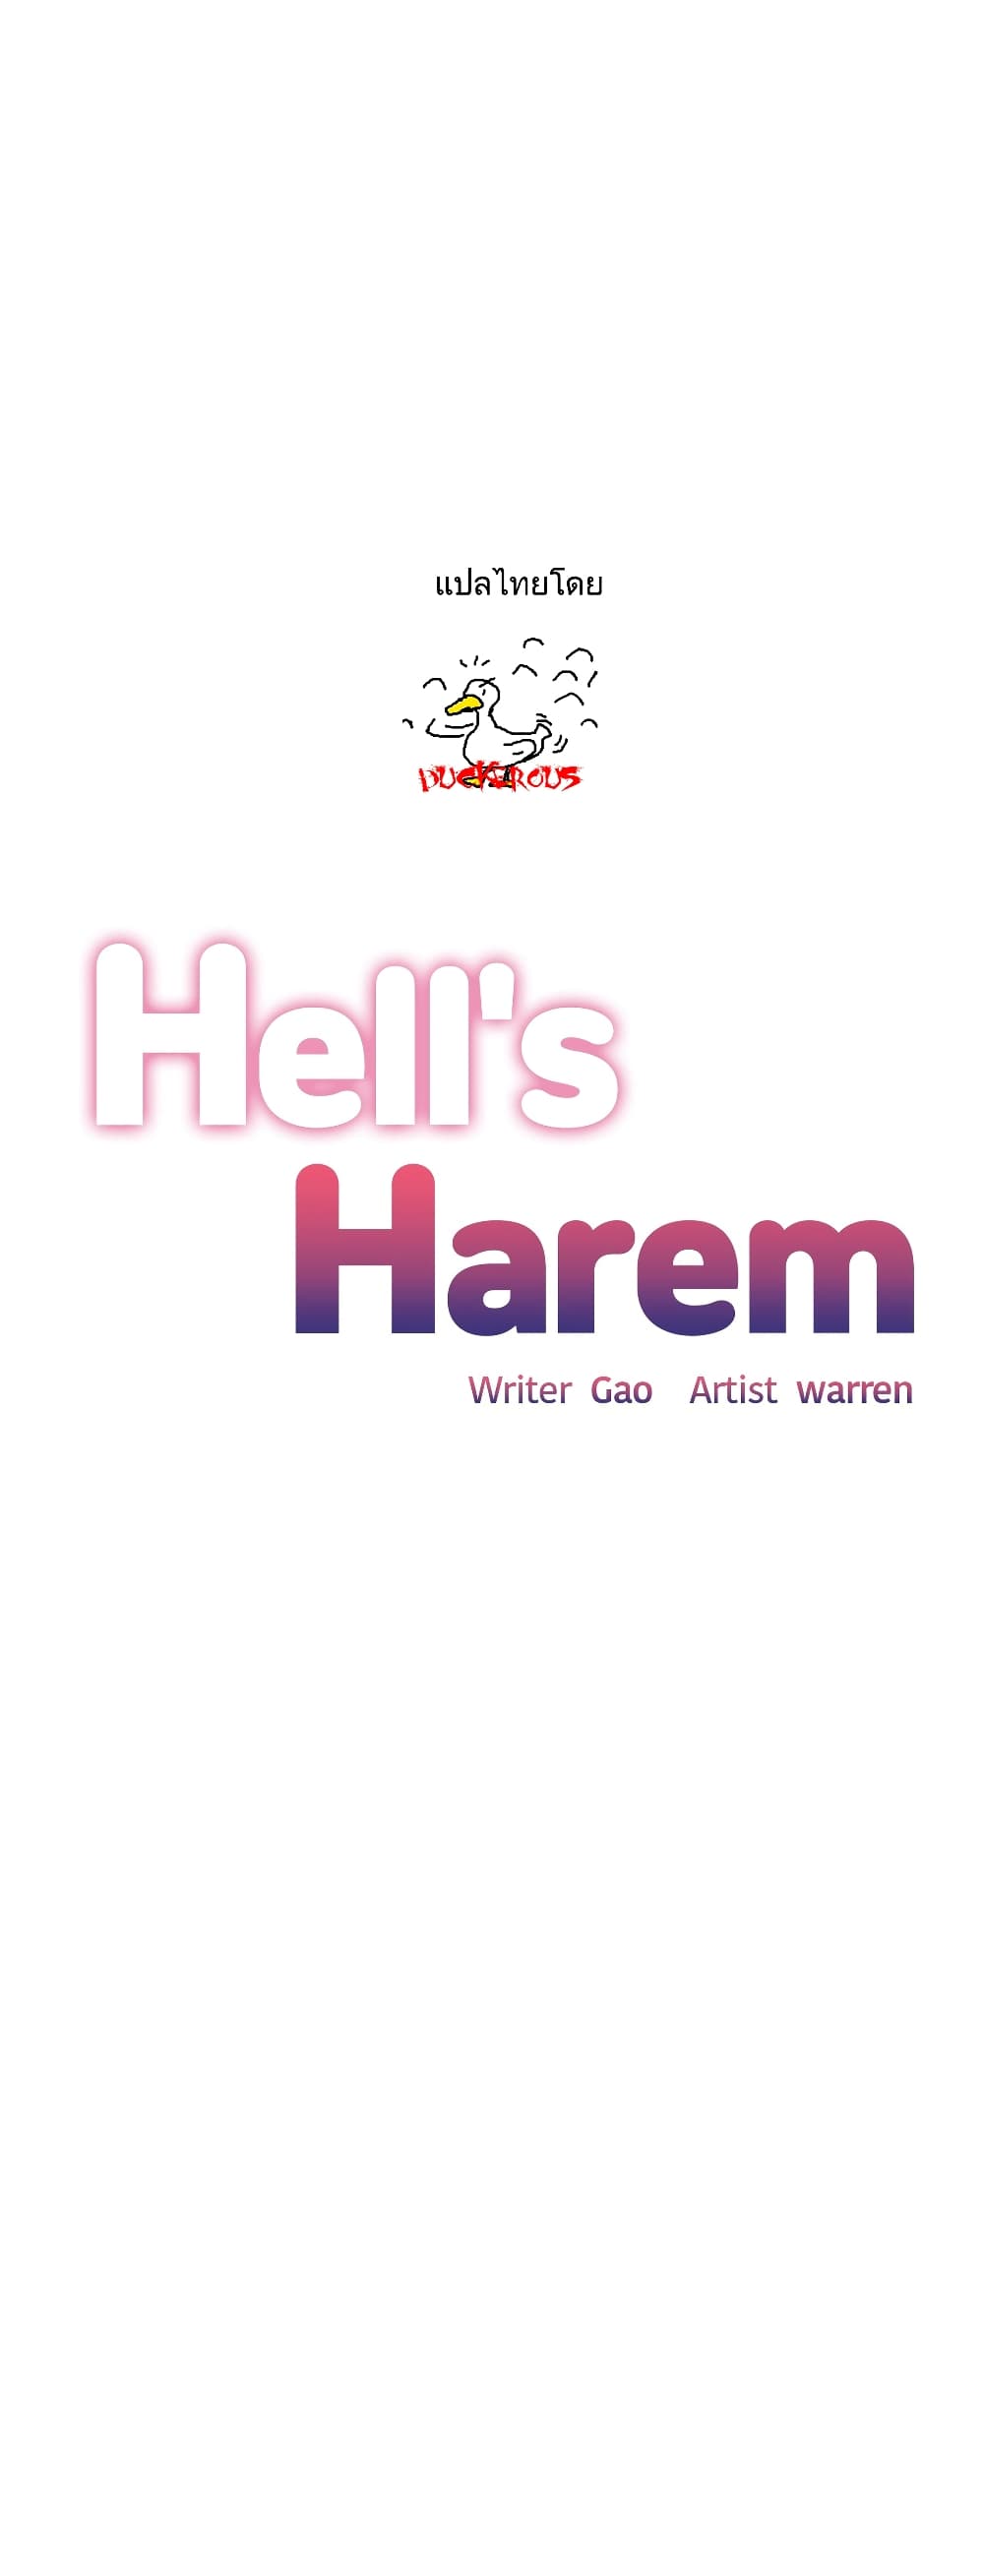 Hell's Harem 36 (1)